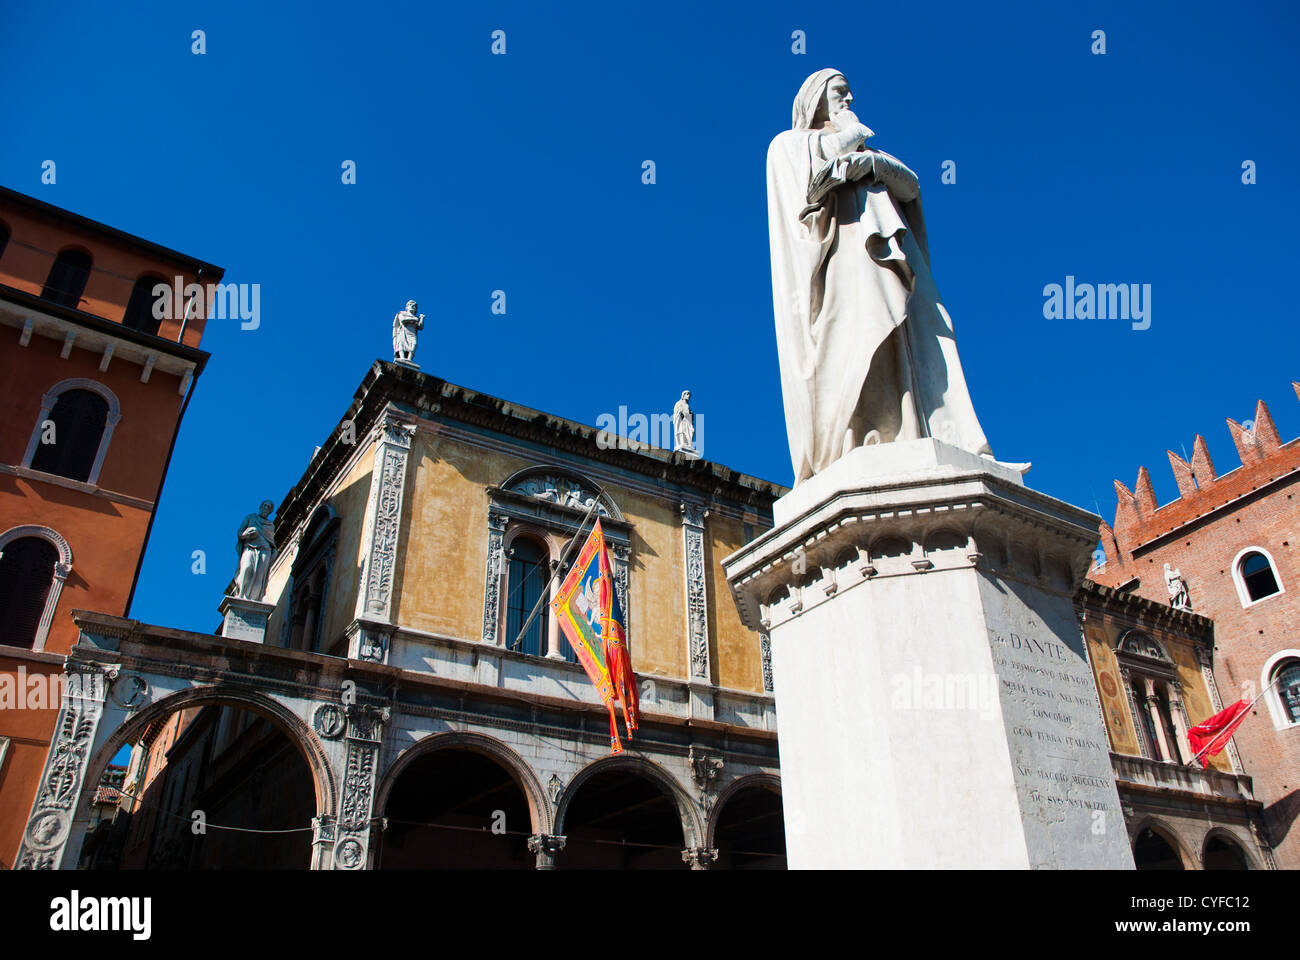 La Piazza dei Signori, también conocida como Piazza Dante en Verona con diversos palacios alrededor de la plaza y una estatua de Dante Alighieri Foto de stock